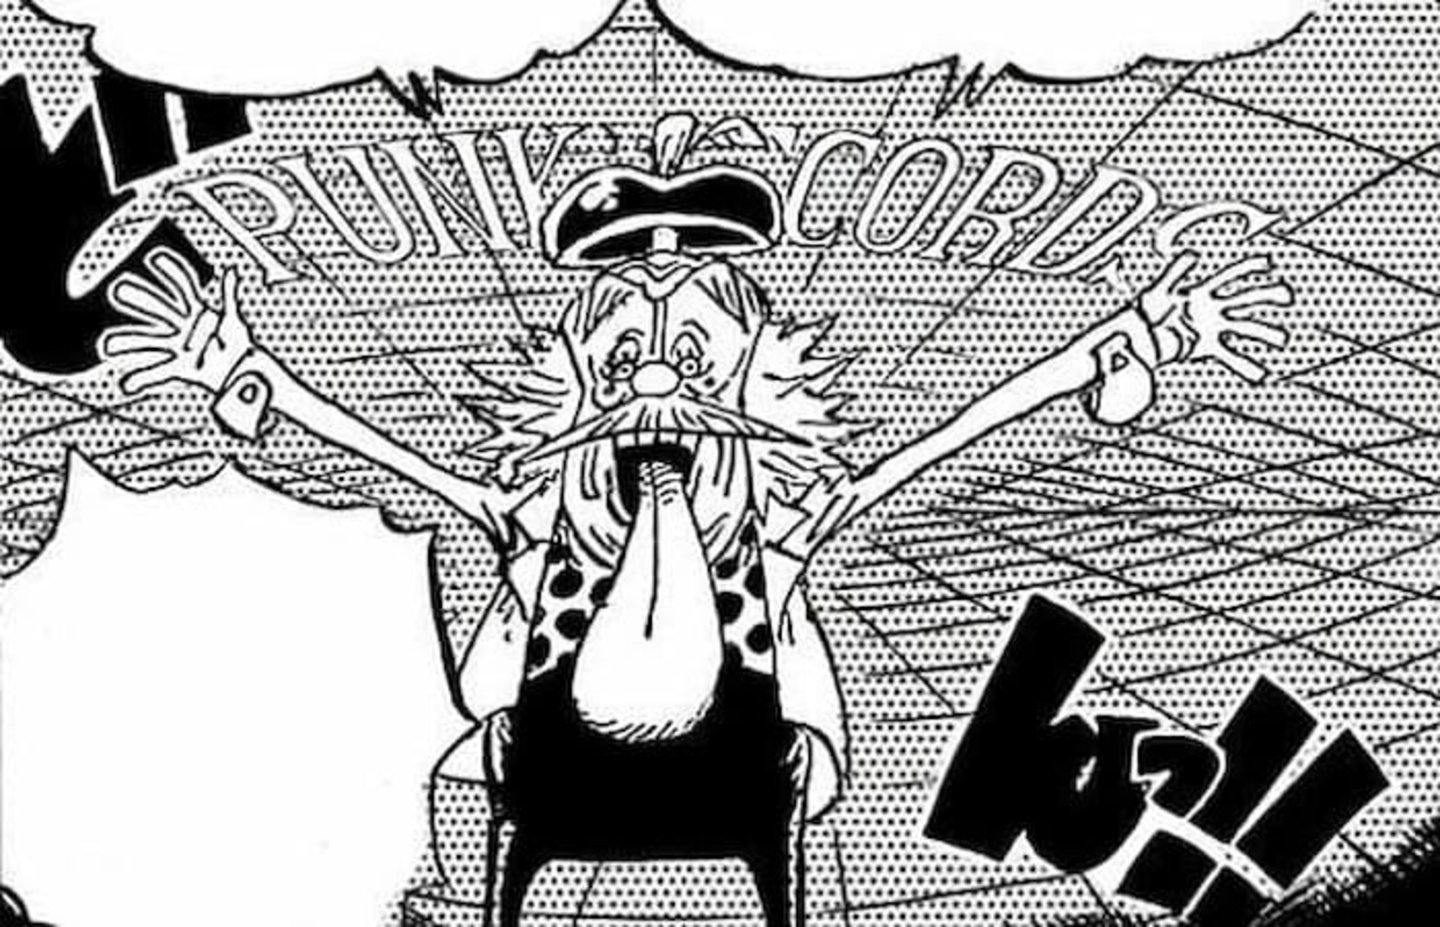 El capítulo más reciente del manga de One Piece podría haber revelado la verdadera personalidad del Dr. Vegapunk, siendo más malvado de lo que se creía